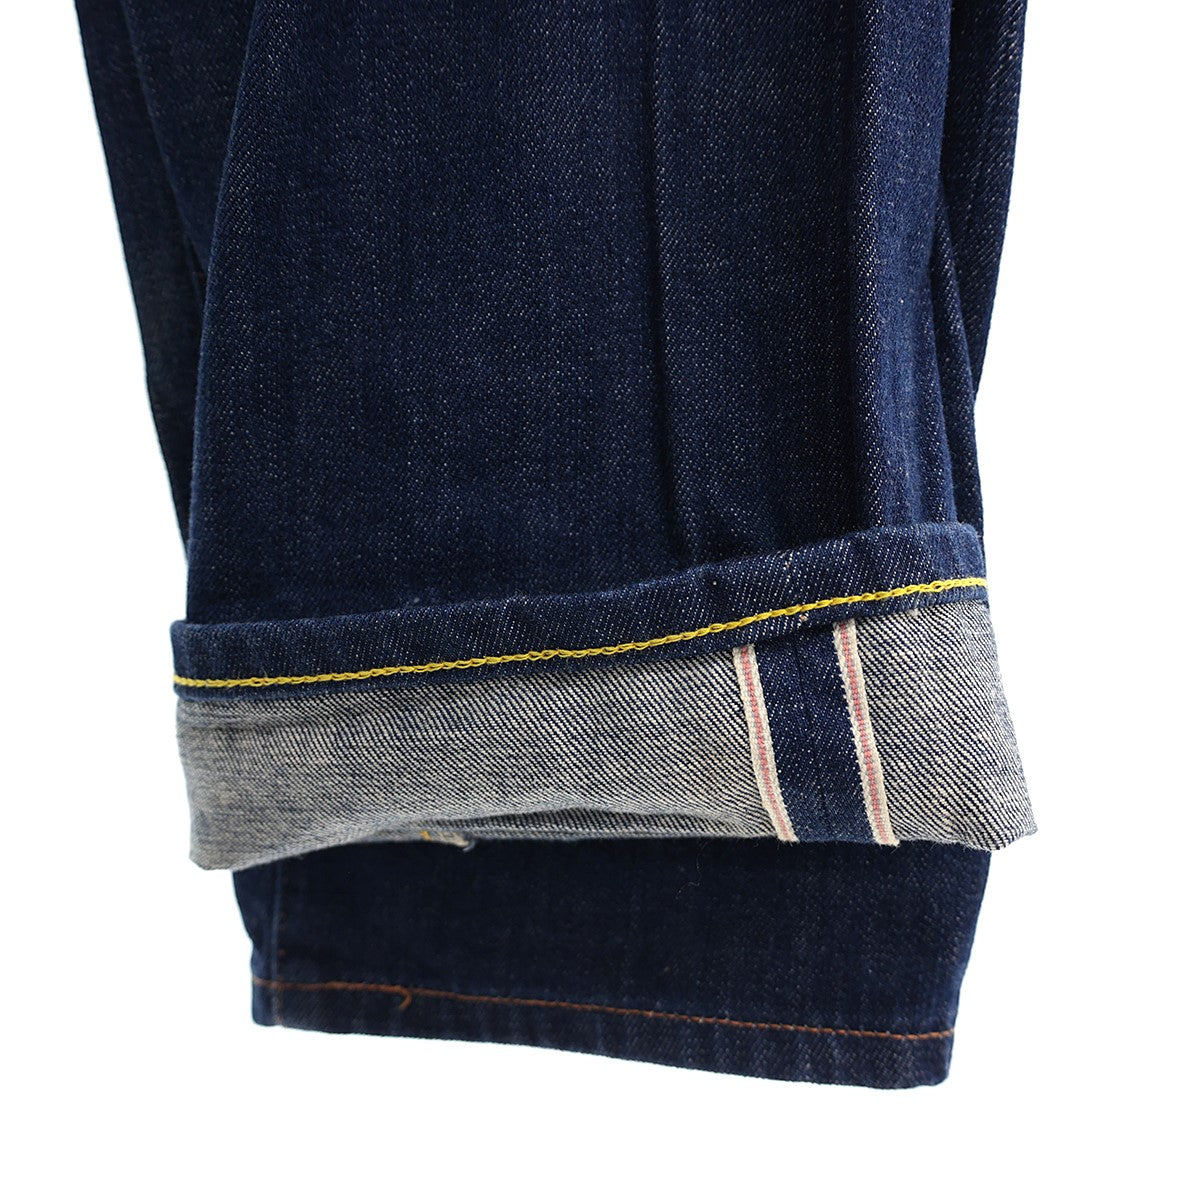 LEVI’S VINTAGE CLOTHING(リーバイスヴィンテージクロージング) 1950s 701 Jeans Rigid701  1950年モデル セルビッジデニムパンツPC9-50701-0008